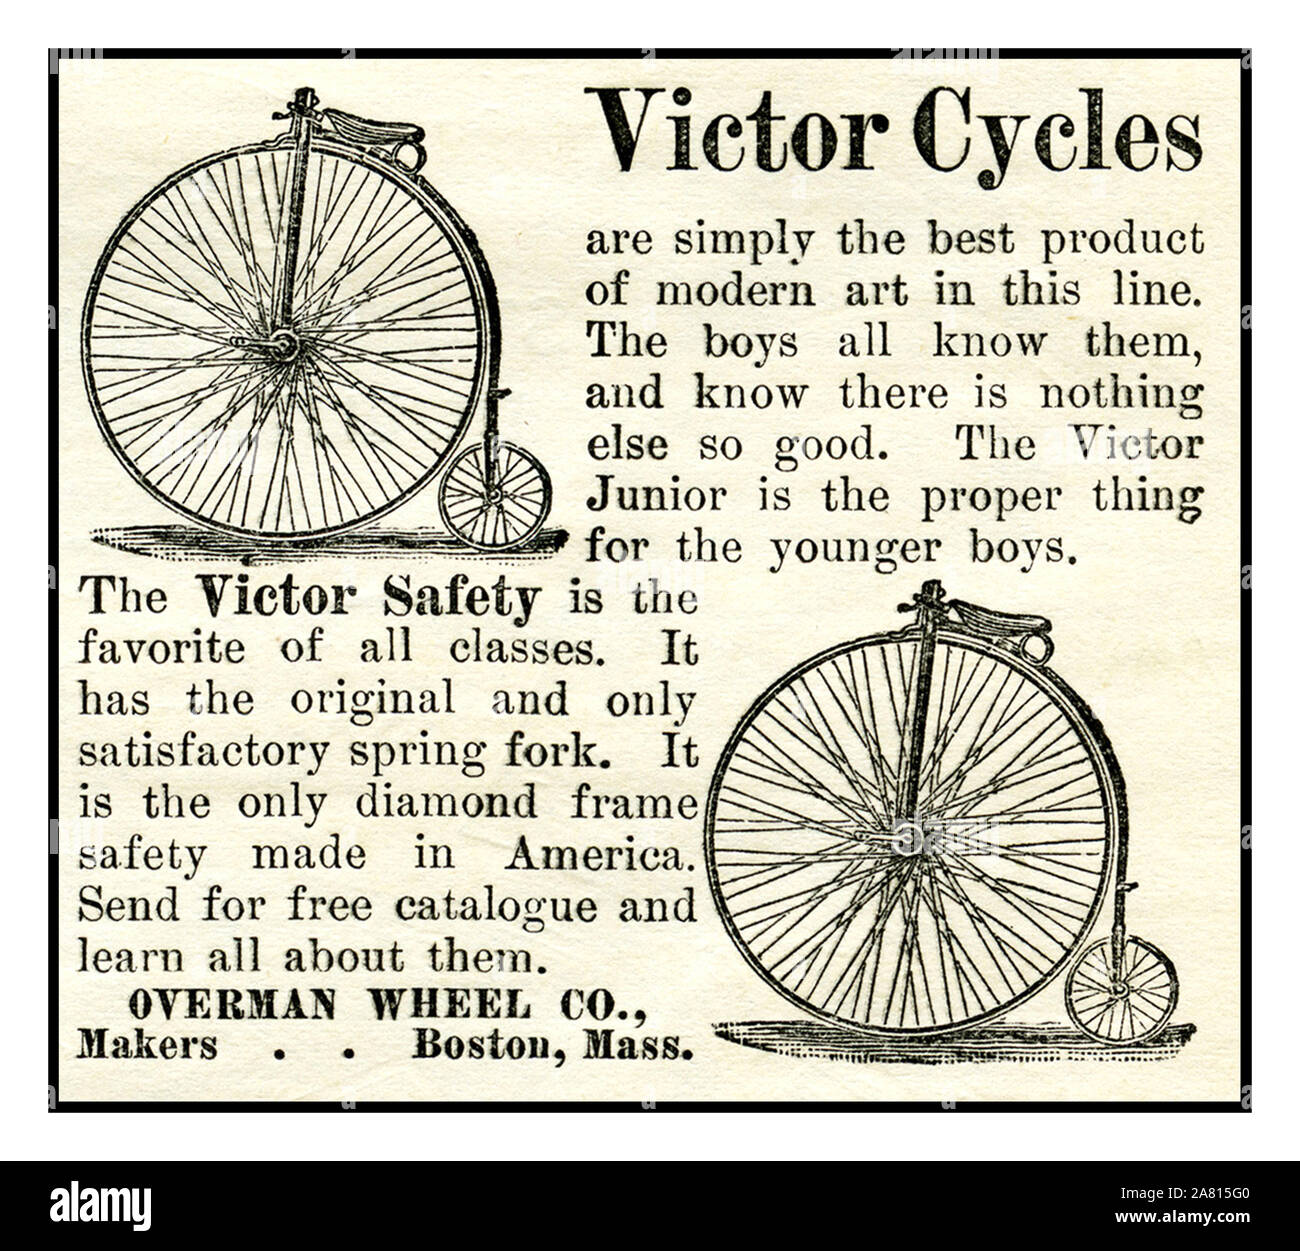 Bicicleta Vintage 1800 EE.UU. anuncio de la era de Victorian ciclos Victor americana "Penny Farthing" bicicletas que fueron hechas por los Overman Co. esta rueda de prensa ad es de mayo de 1887 Cuestión de Harper's New Monthly Magazine Boston Massachusetts Estados Unidos EE.UU. Foto de stock